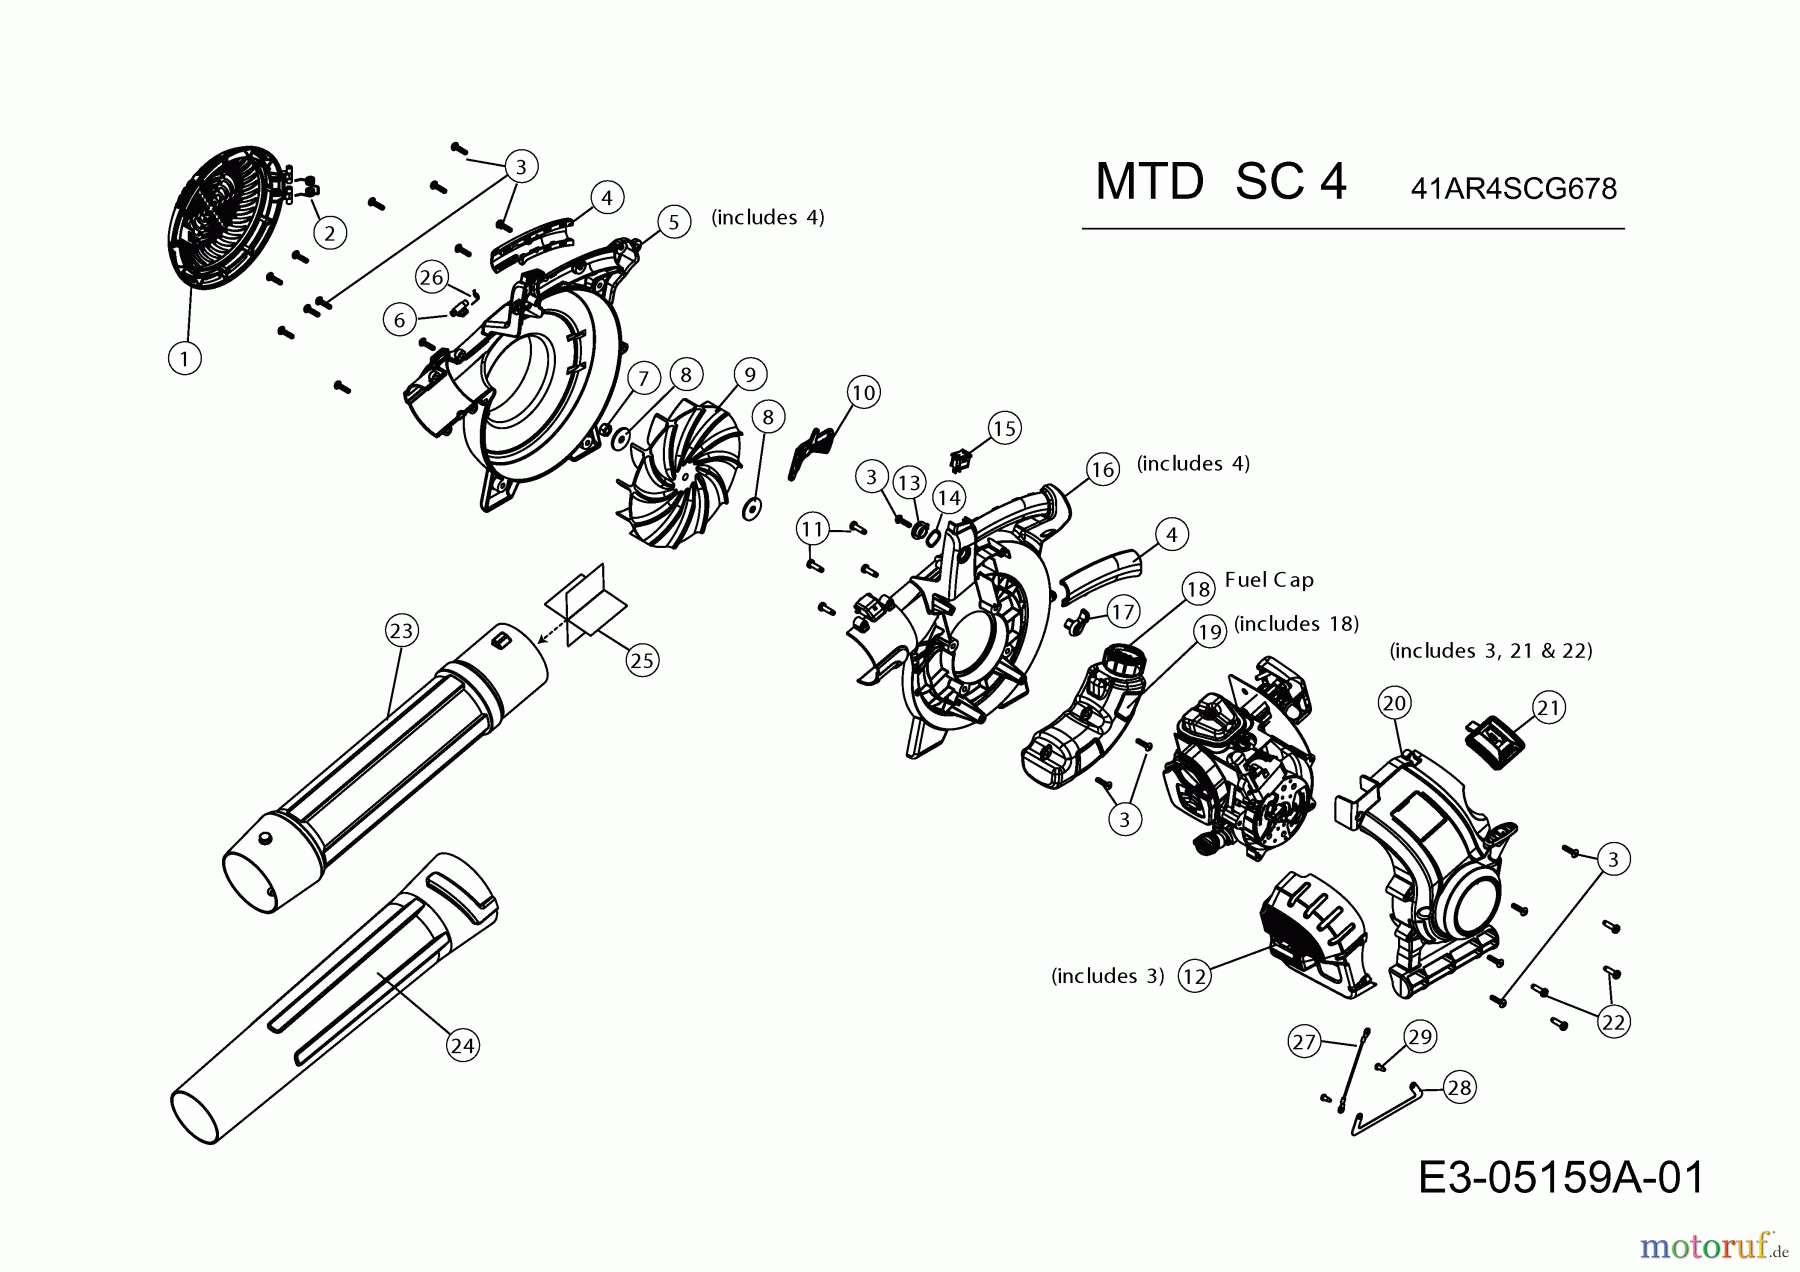  MTD Leaf blower, Blower vac SC 4 41AR4SCG678  (2018) Basic machine